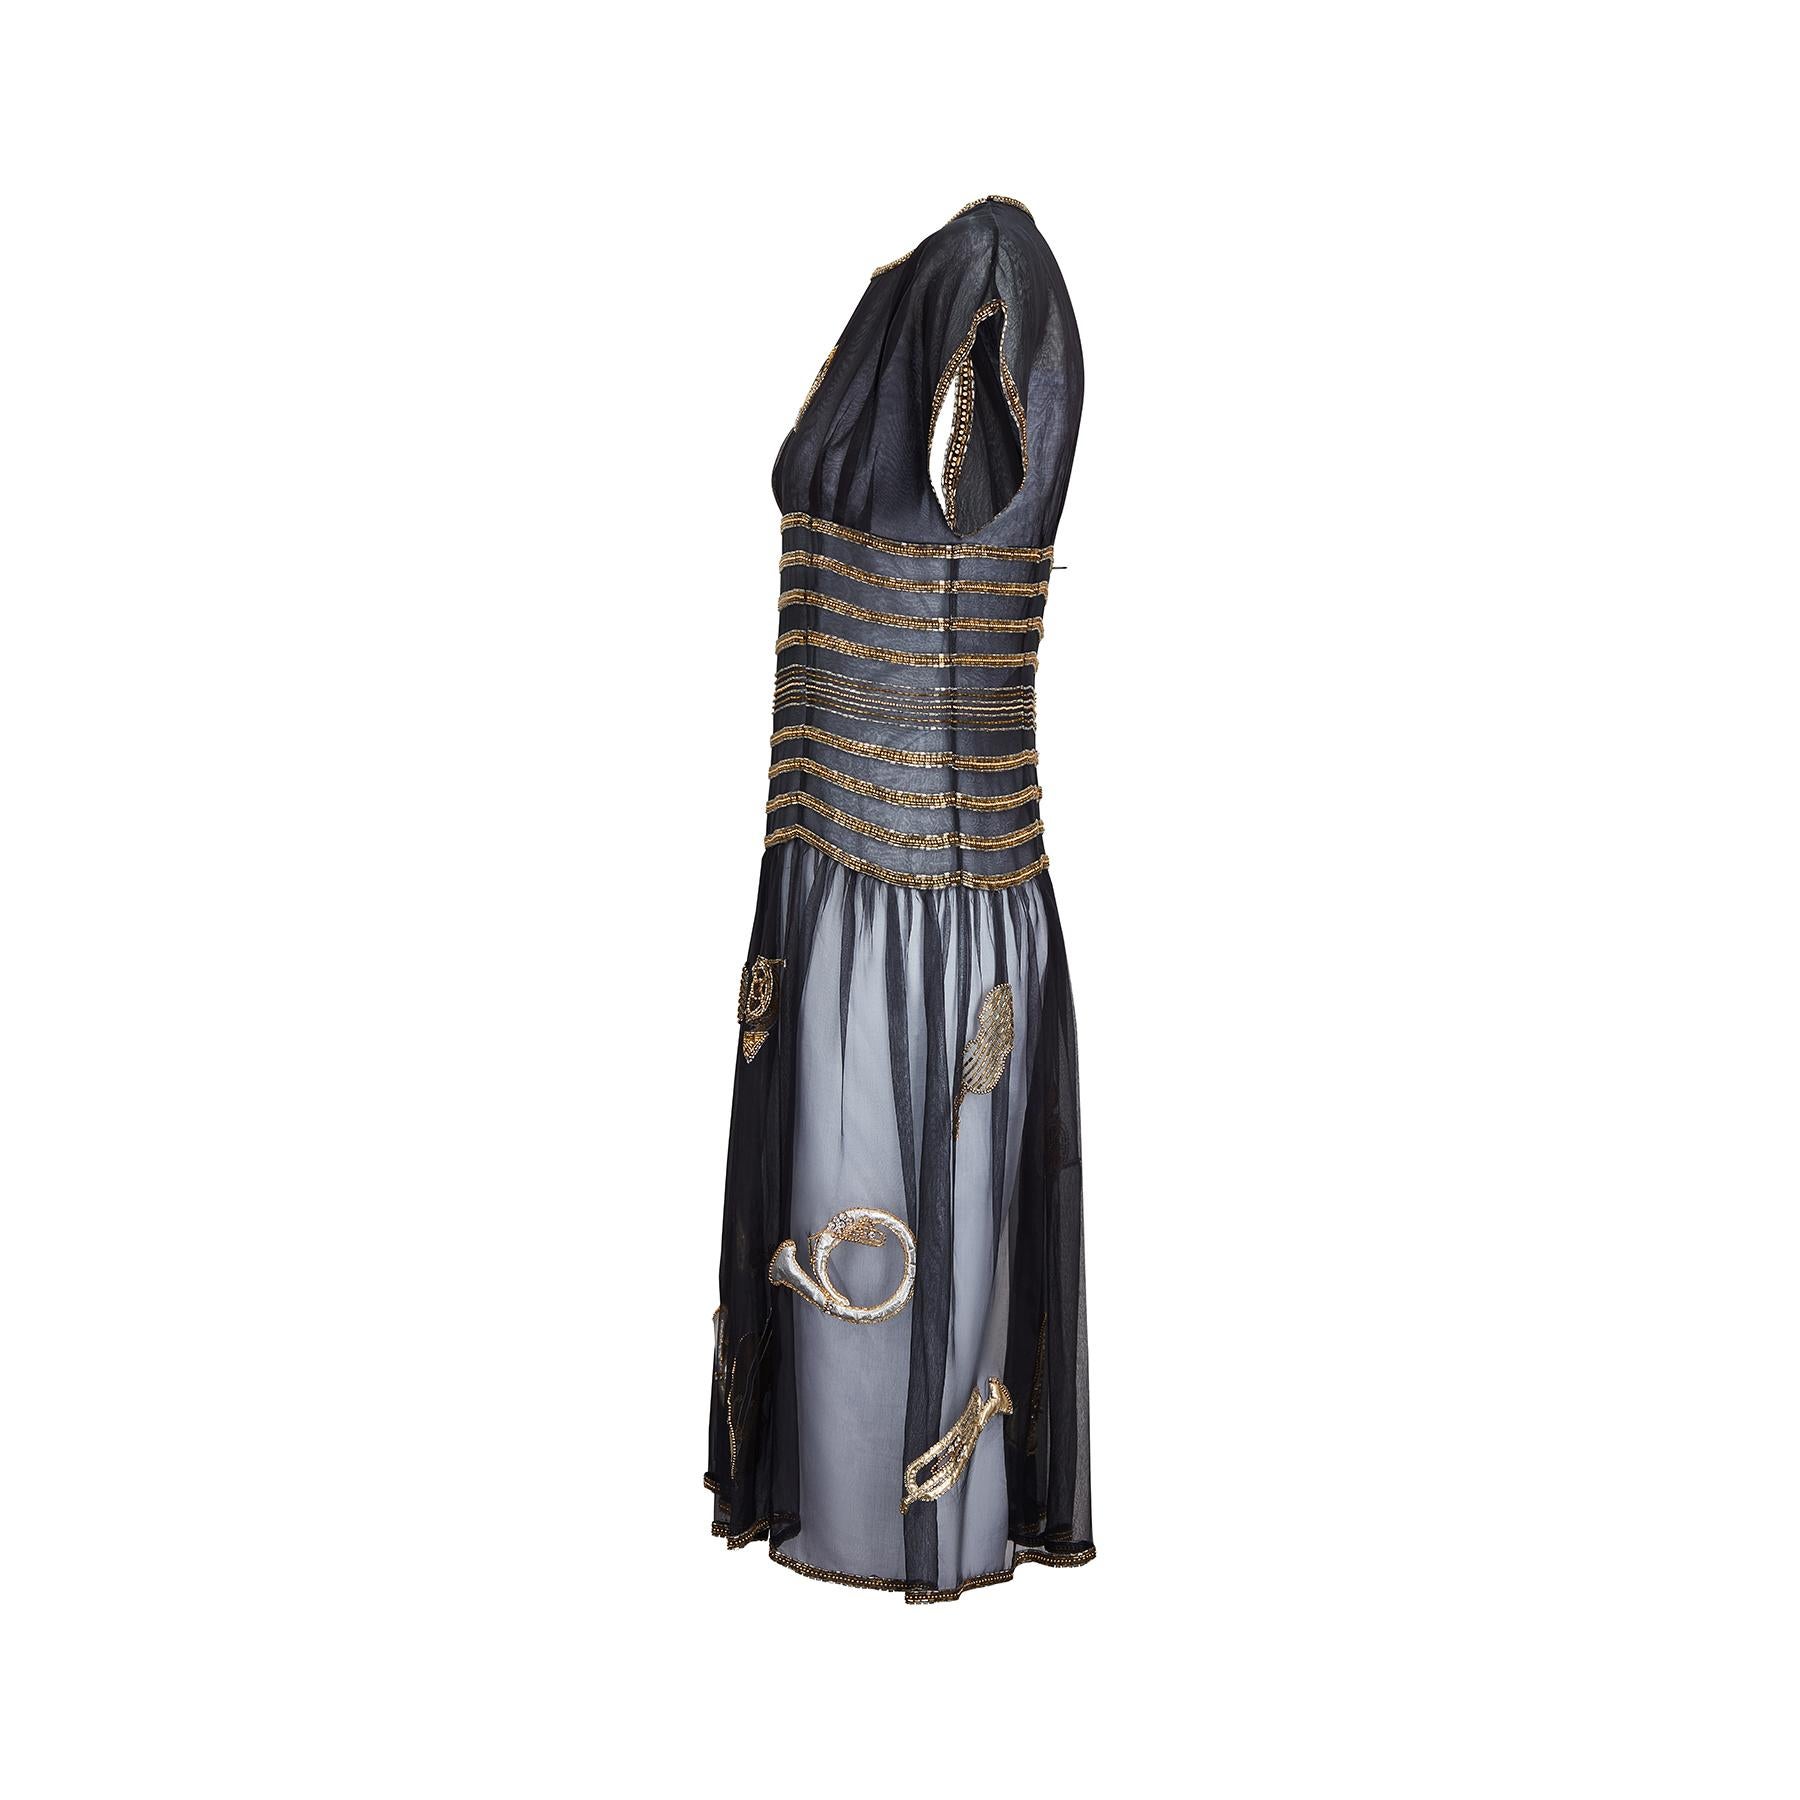 Il s'agit d'une belle et rare robe d'instrument de musique de Chloé, documentée par une piste d'atterrissage.  Une pièce qui fait sensation, créée par Karl Lagerfeld dans la collection printemps/été 1983. Les robes ornées de perles, aux thèmes